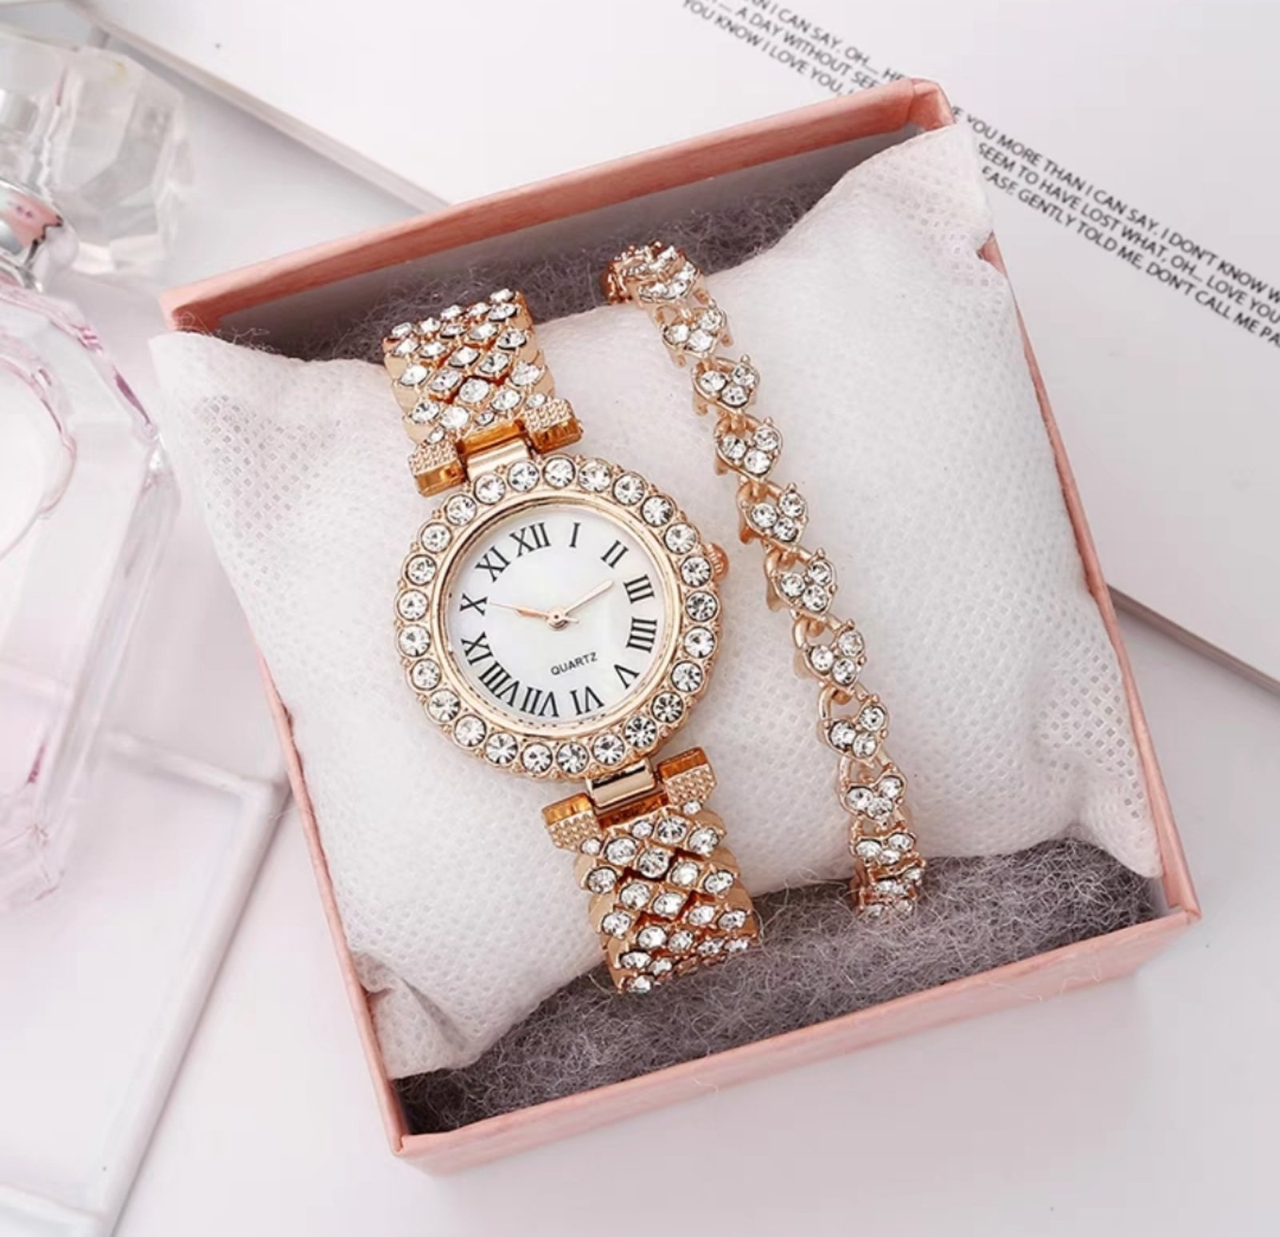 Жіночий годинник на зап'ястя стильний аксесуар і прикраса для жінки. У комплекті разом з годинниками йде браслет!